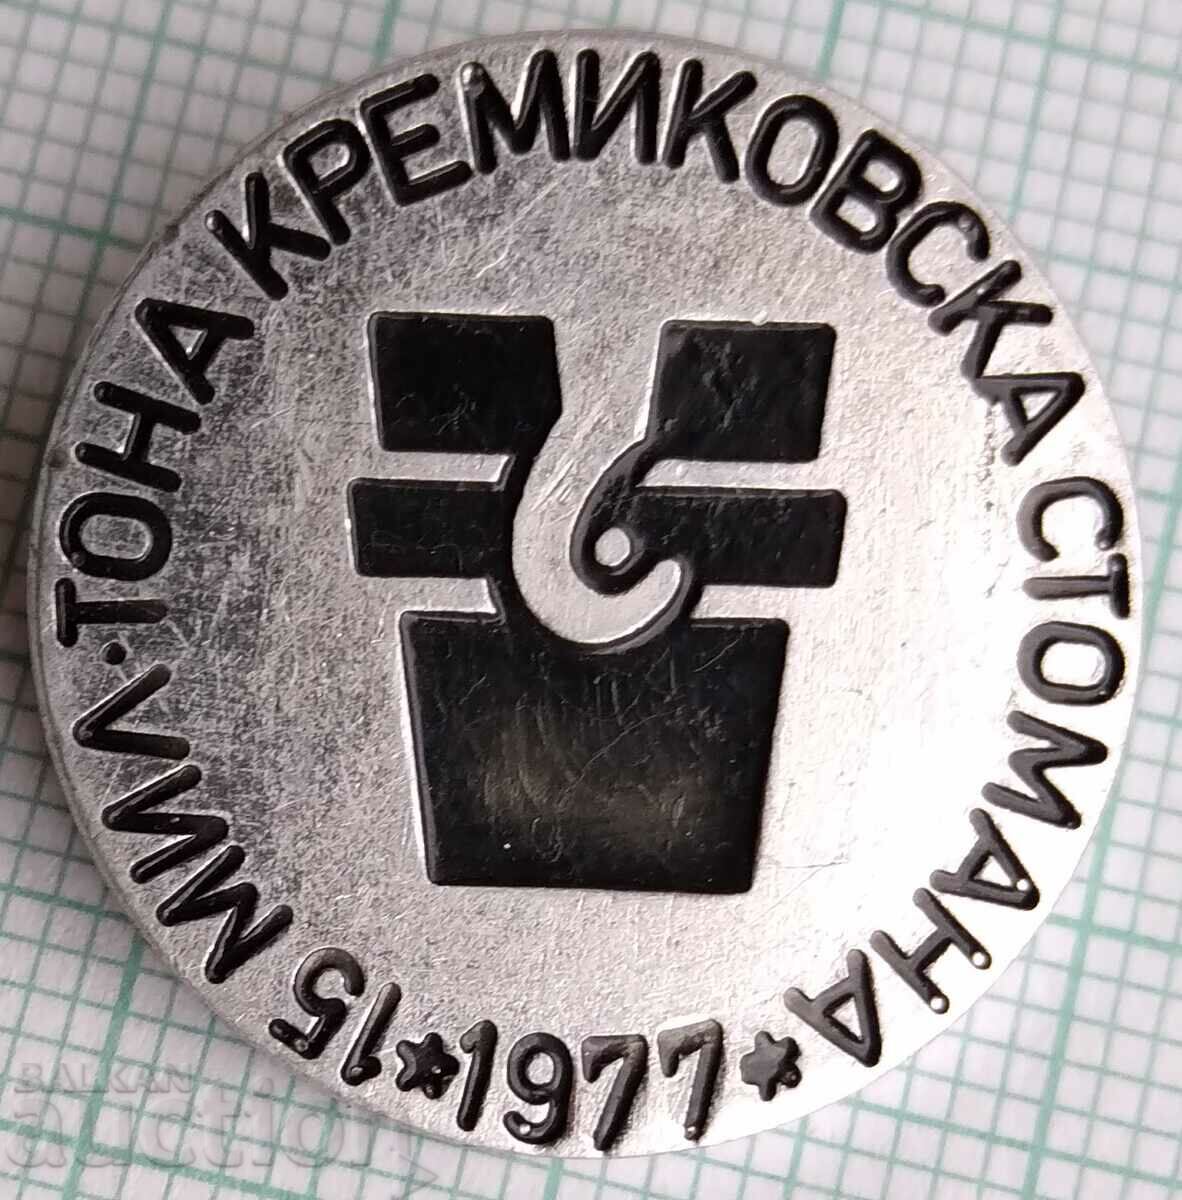 Σήμα 12317 - 15 εκατομμύρια τόνοι χάλυβας Kremikov 1977